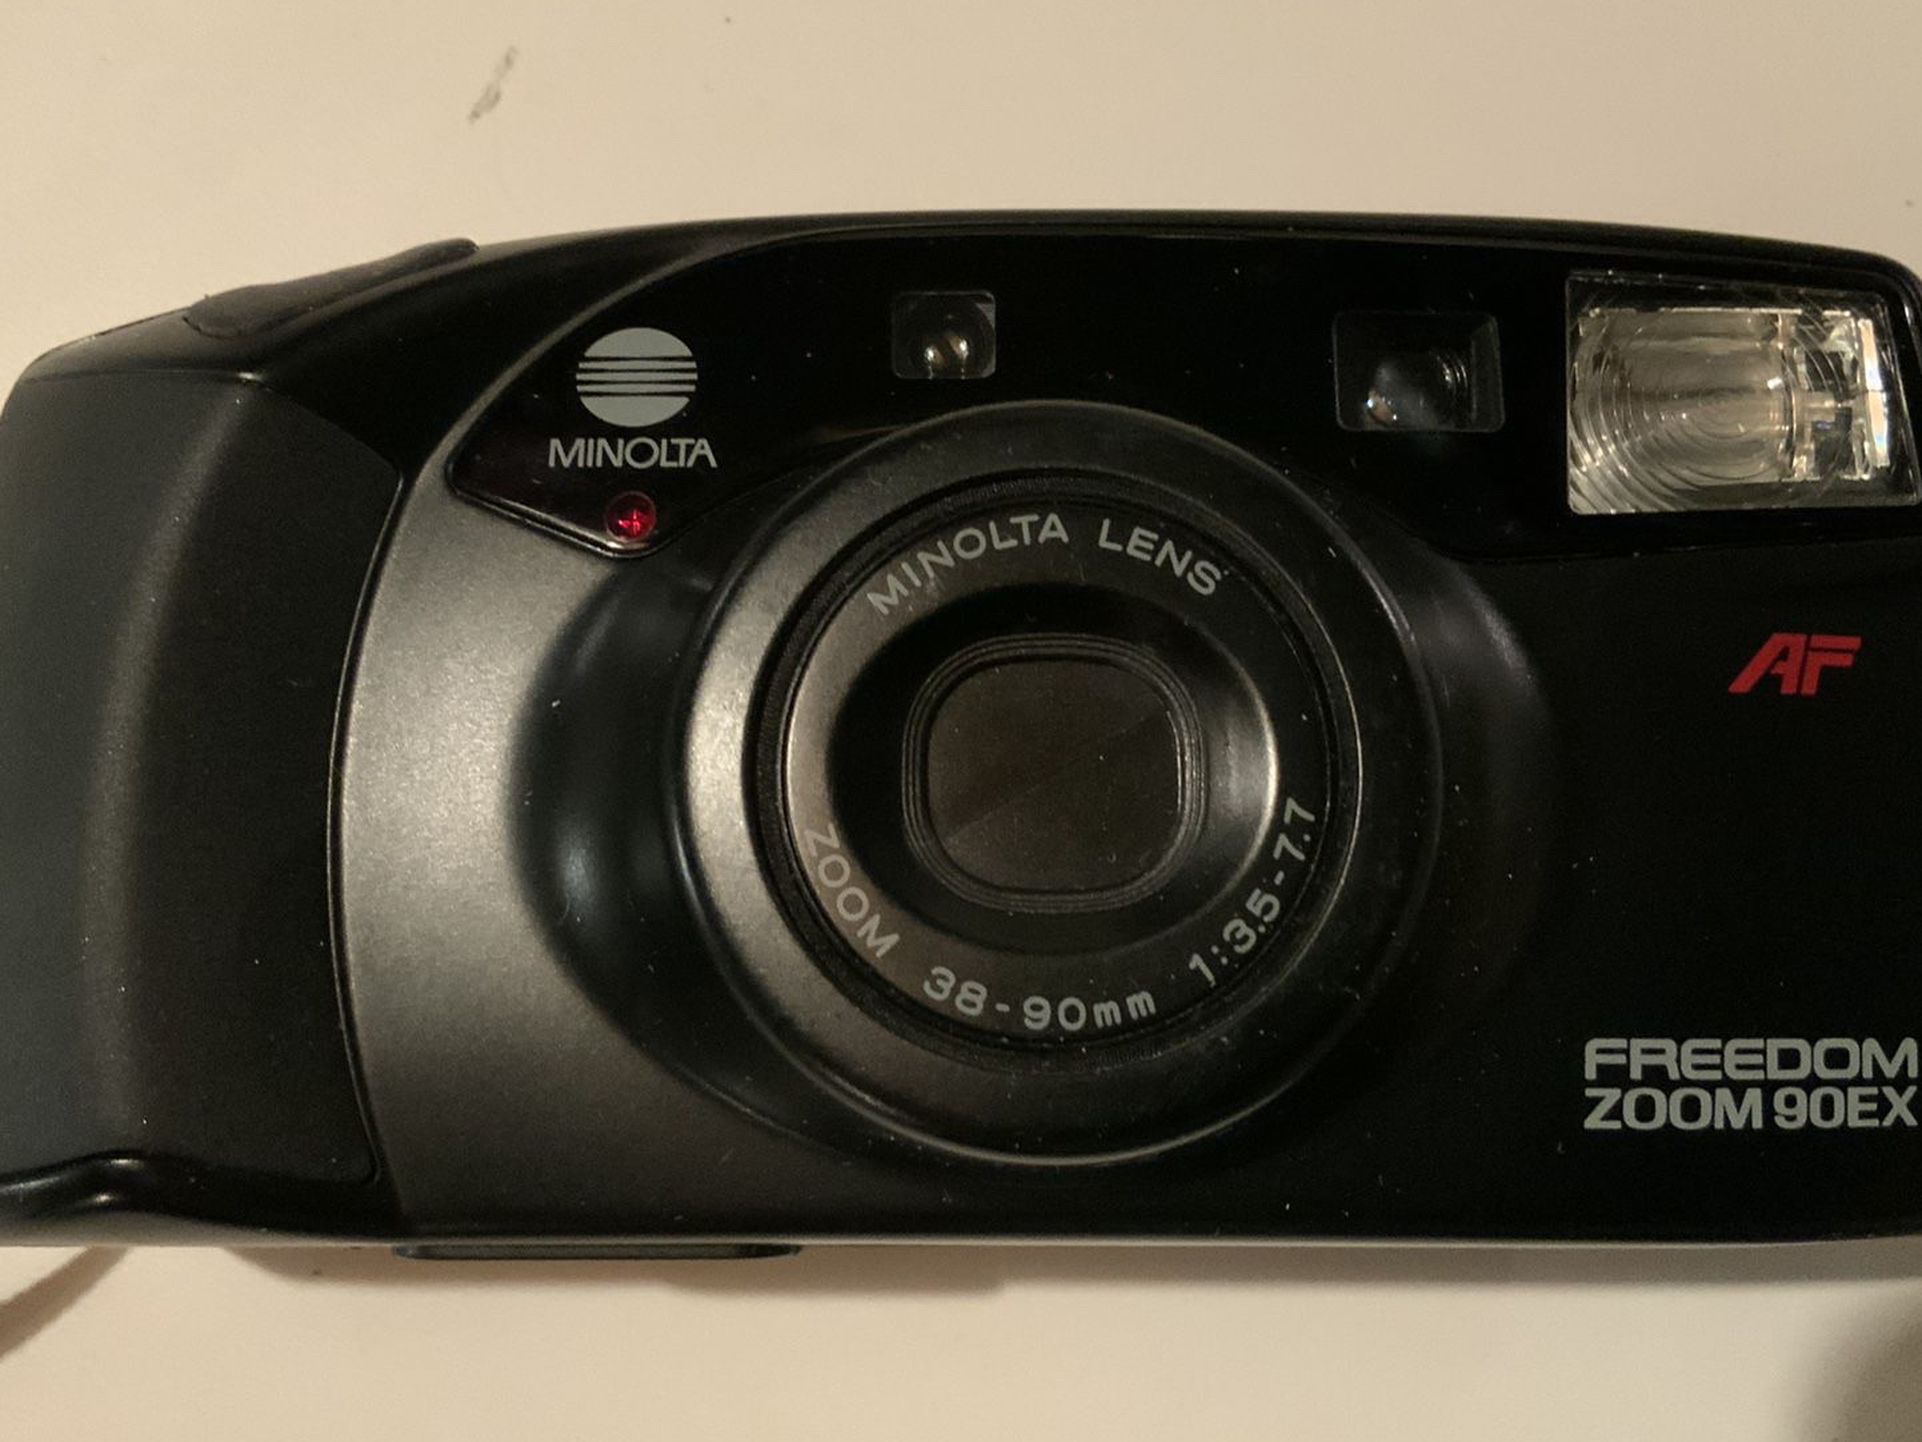 Minolta Freedom Zoom 90EX Film Camera